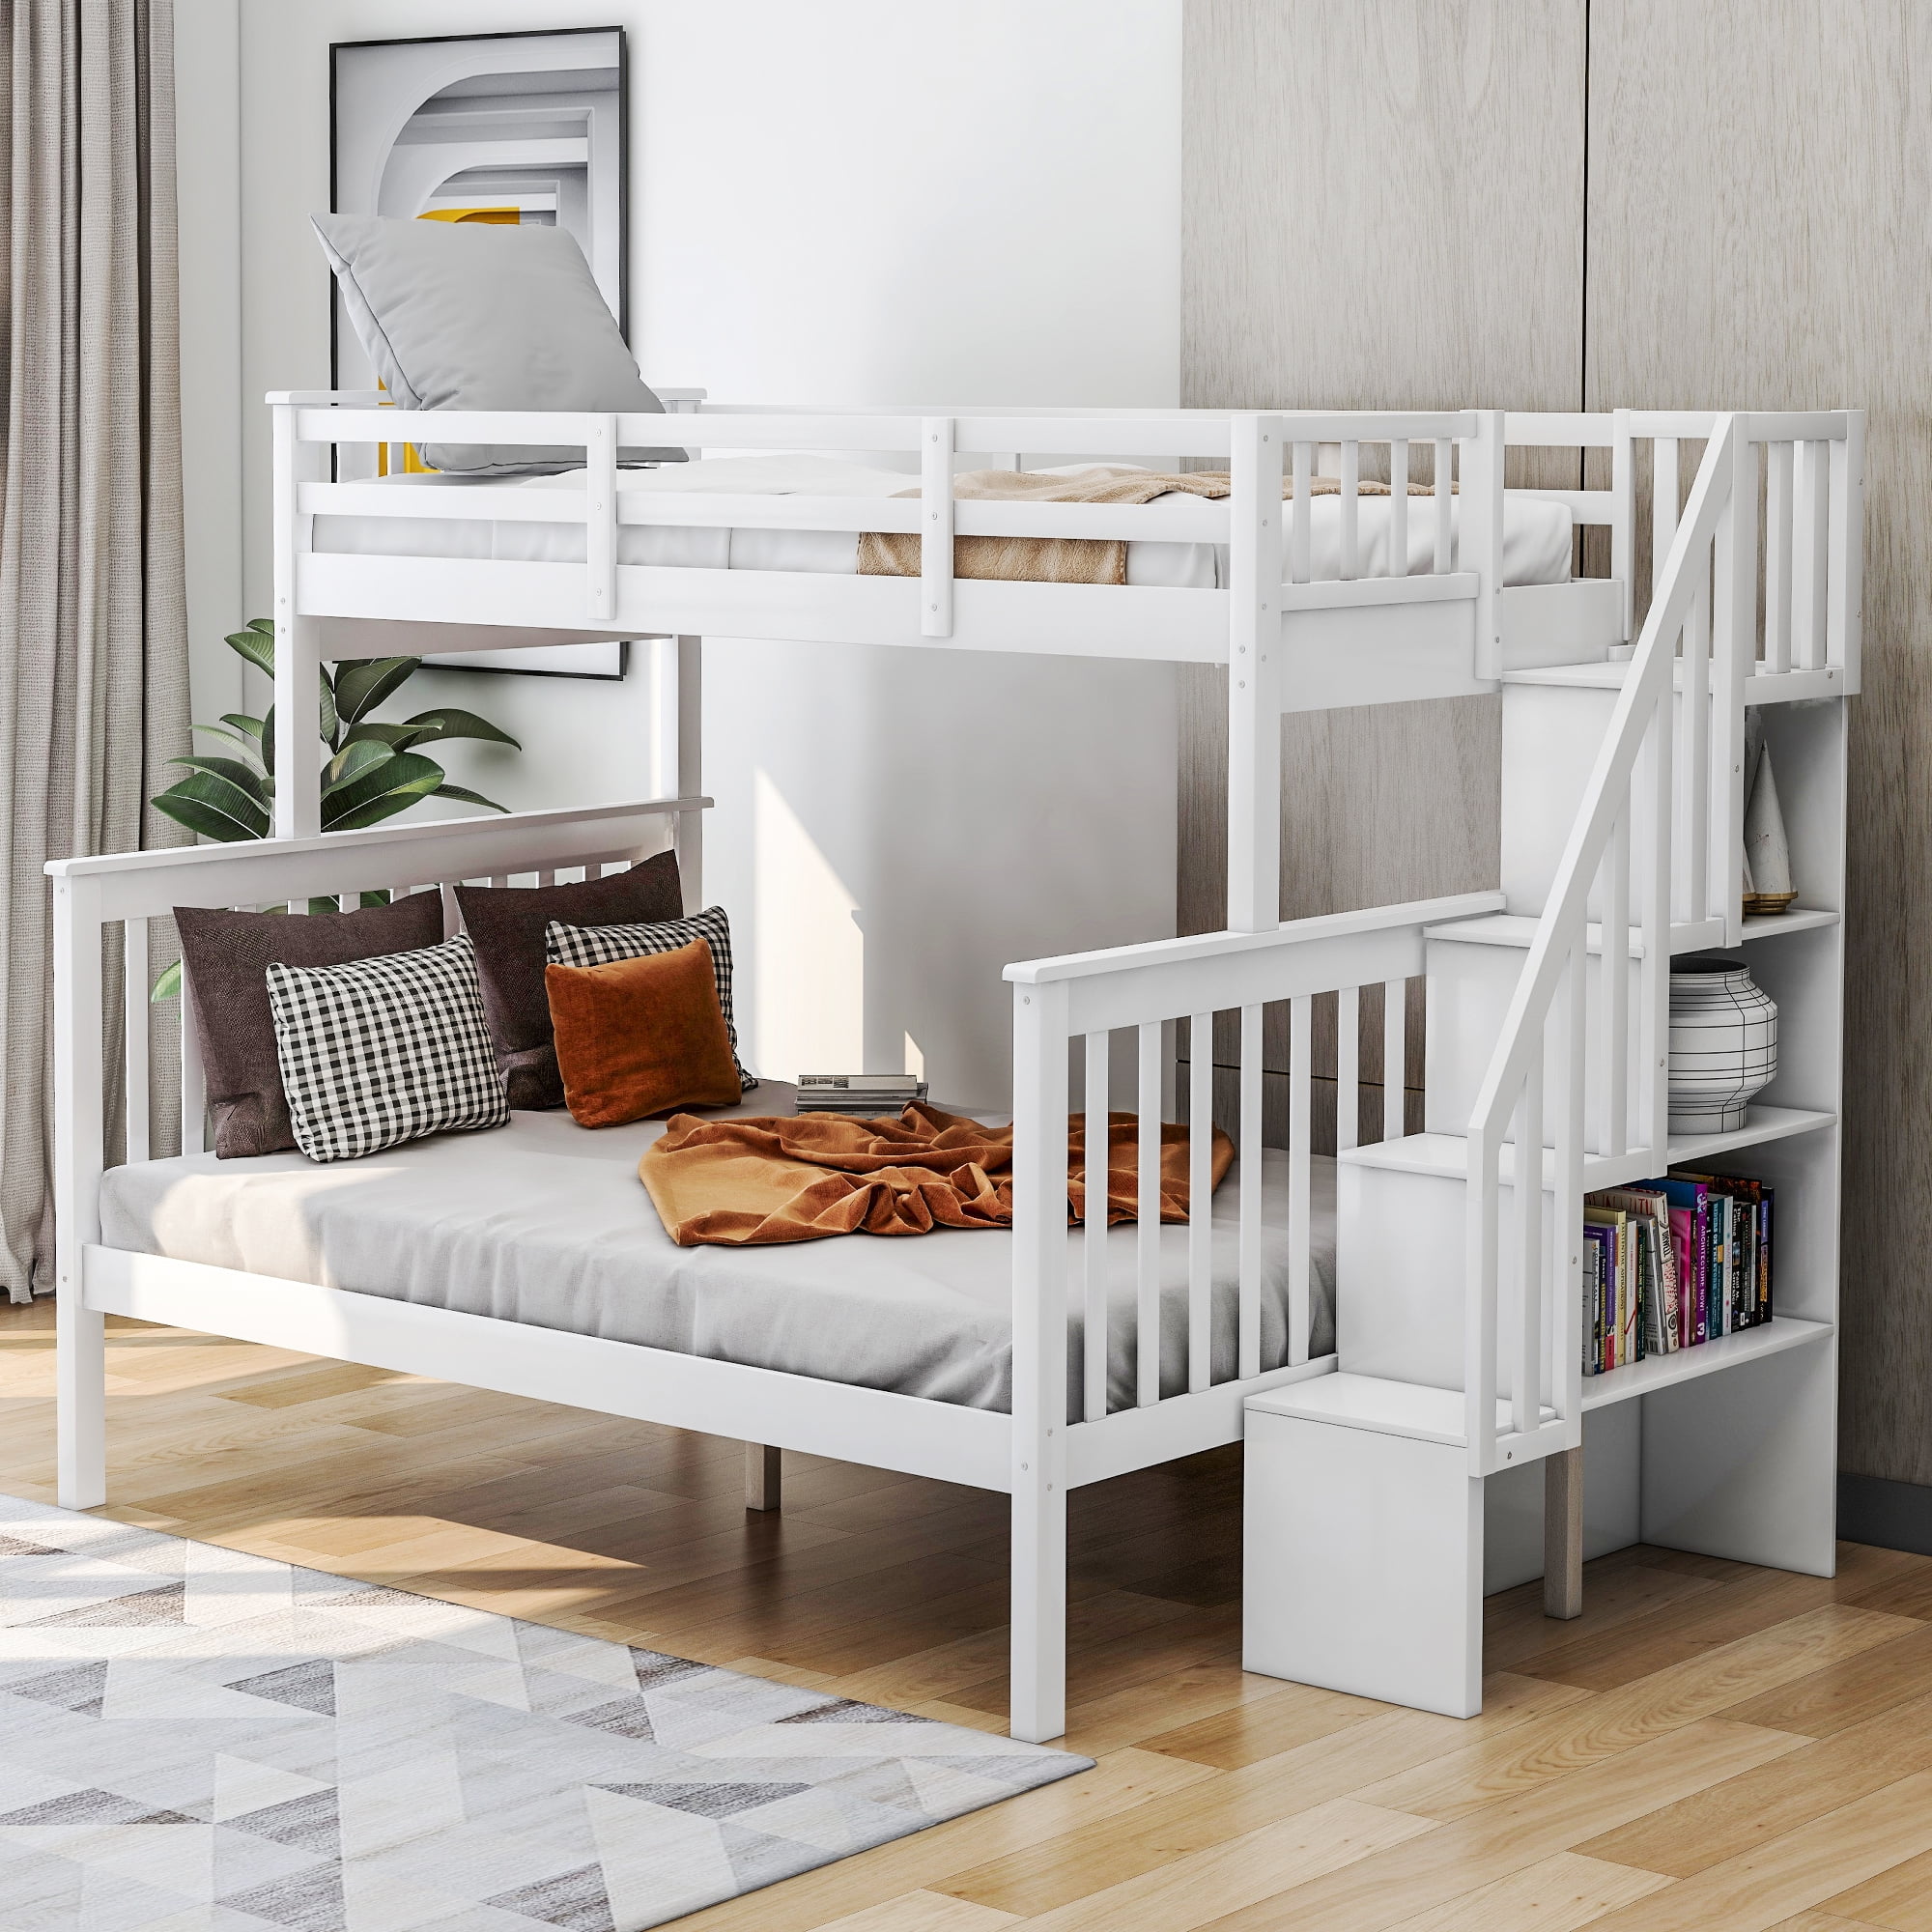 Bedroom Hardwood Bunk Bed Frame, White Full Size Bunk Beds